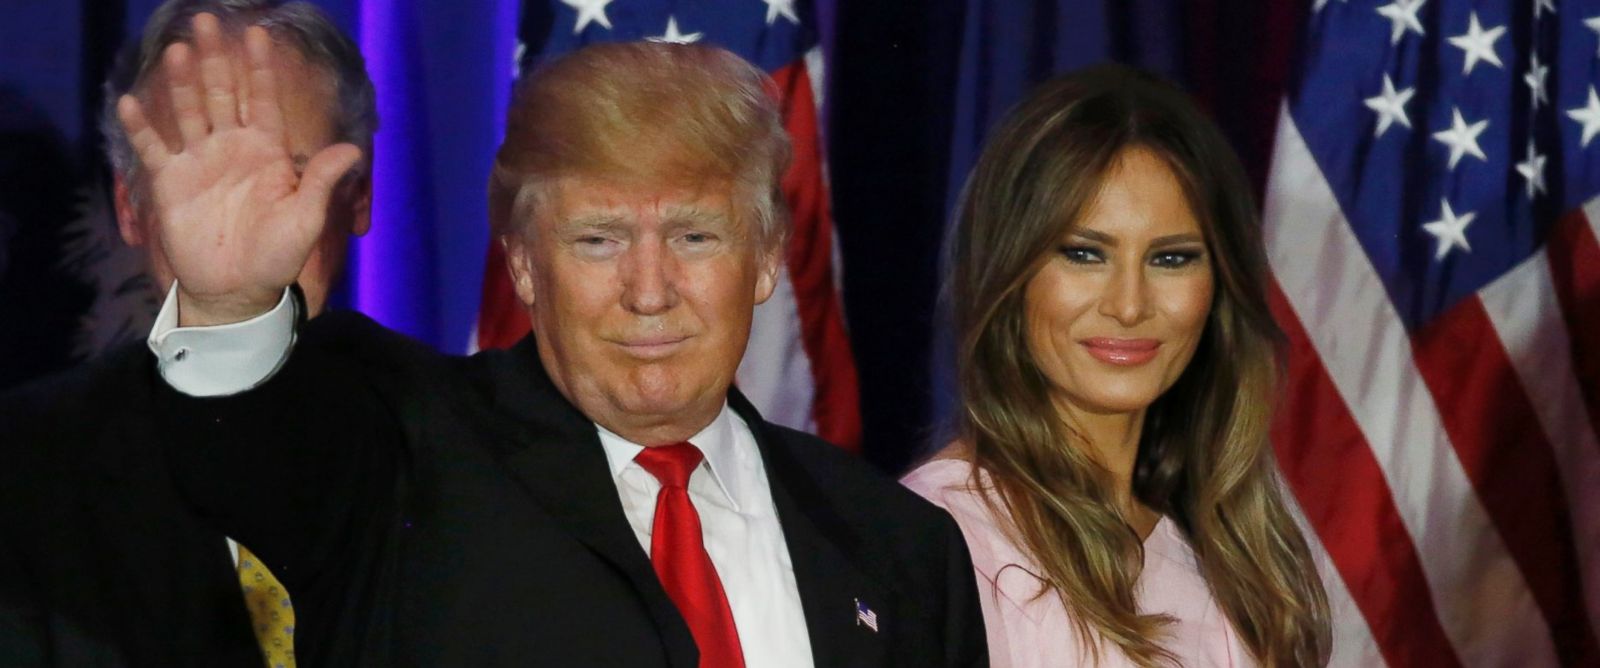  ABD Başkanı Donald Trump'ın eşi Melania Trump